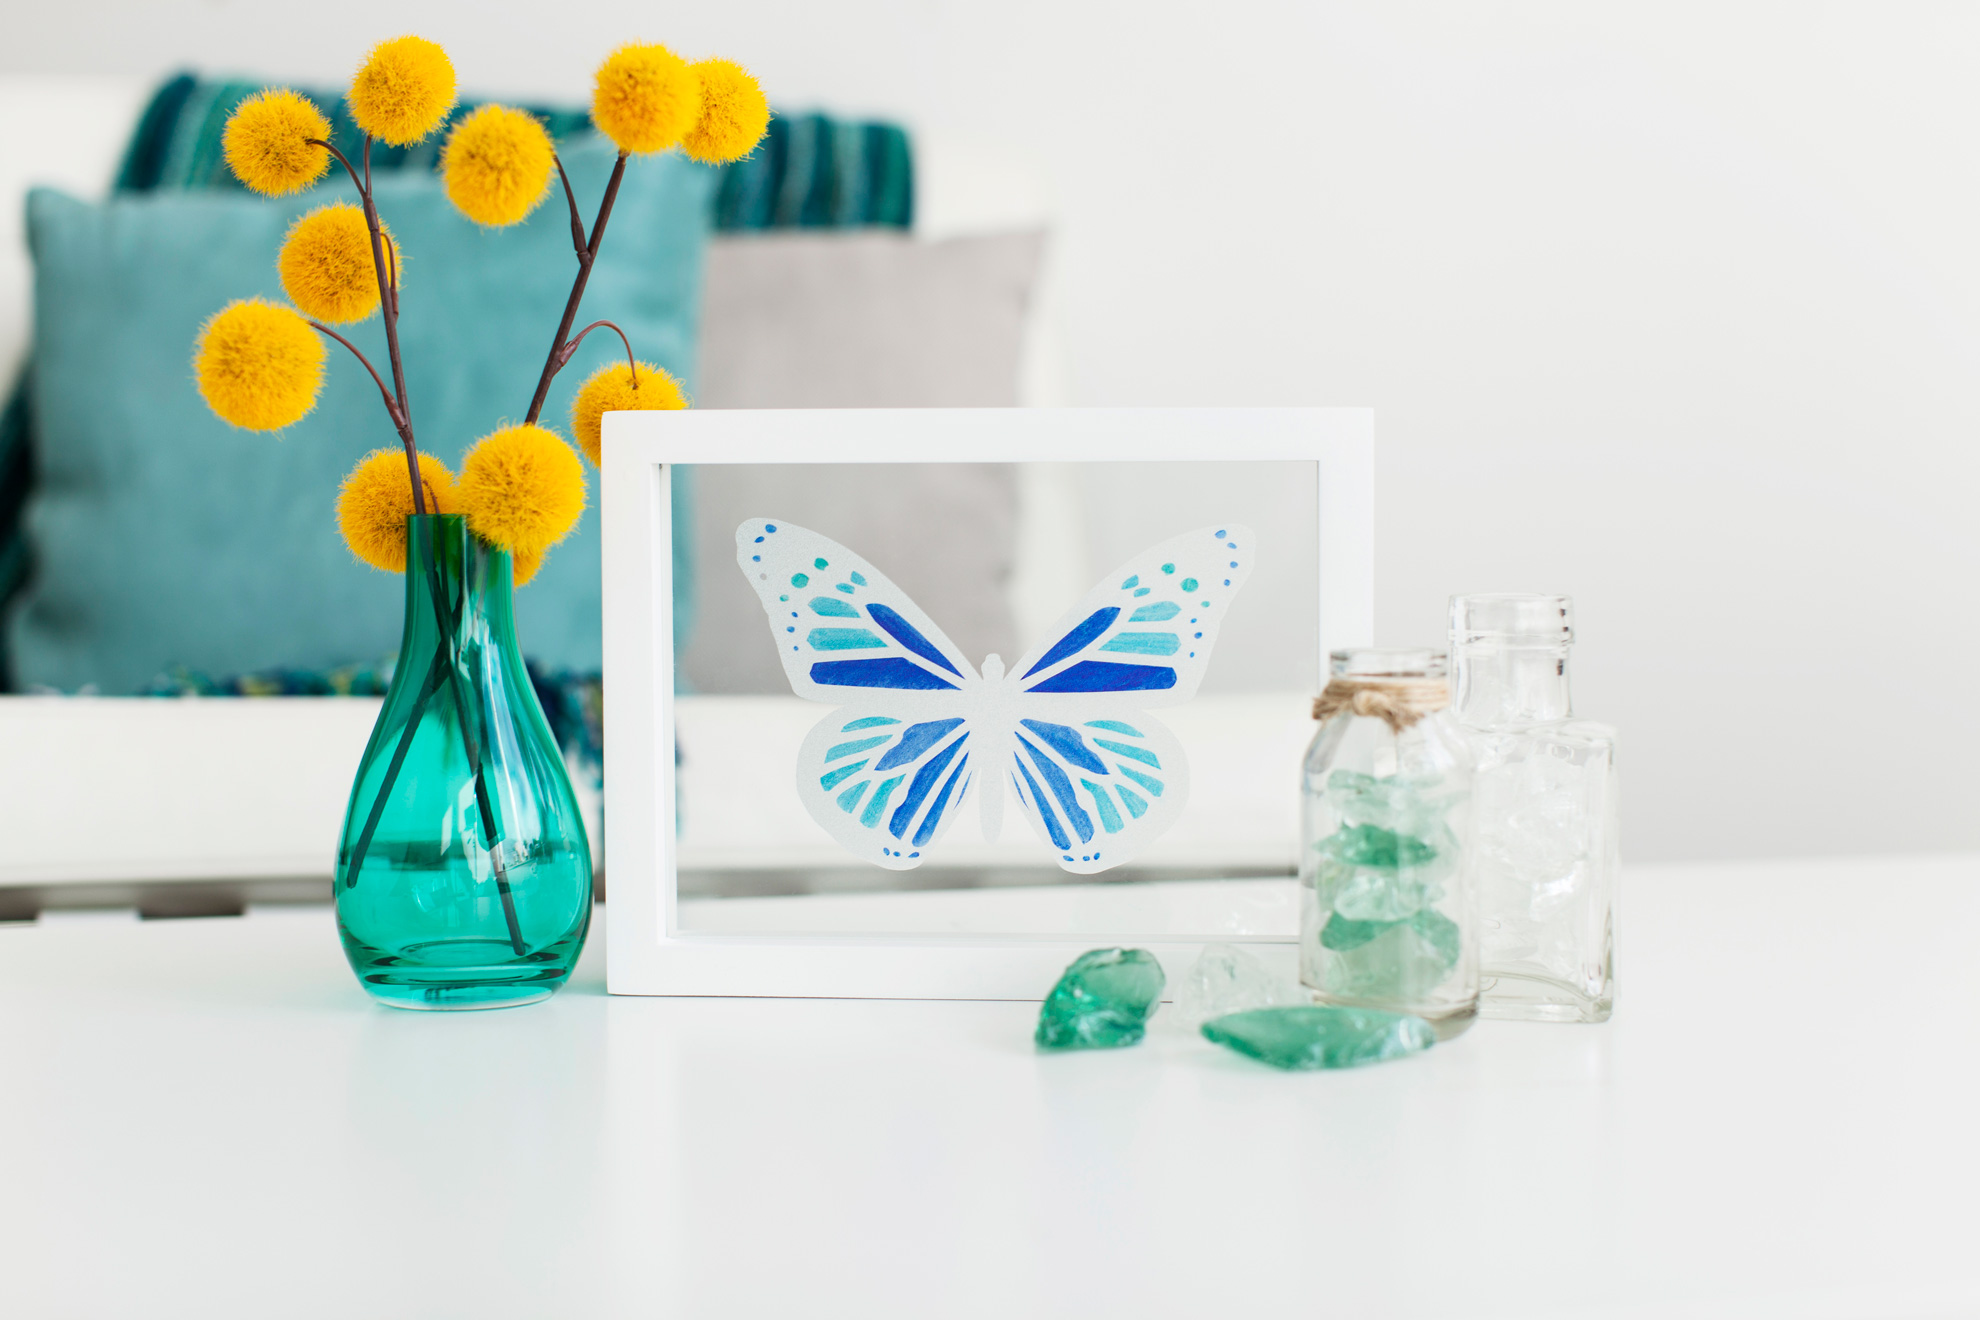 butterfly design inside white frame on table